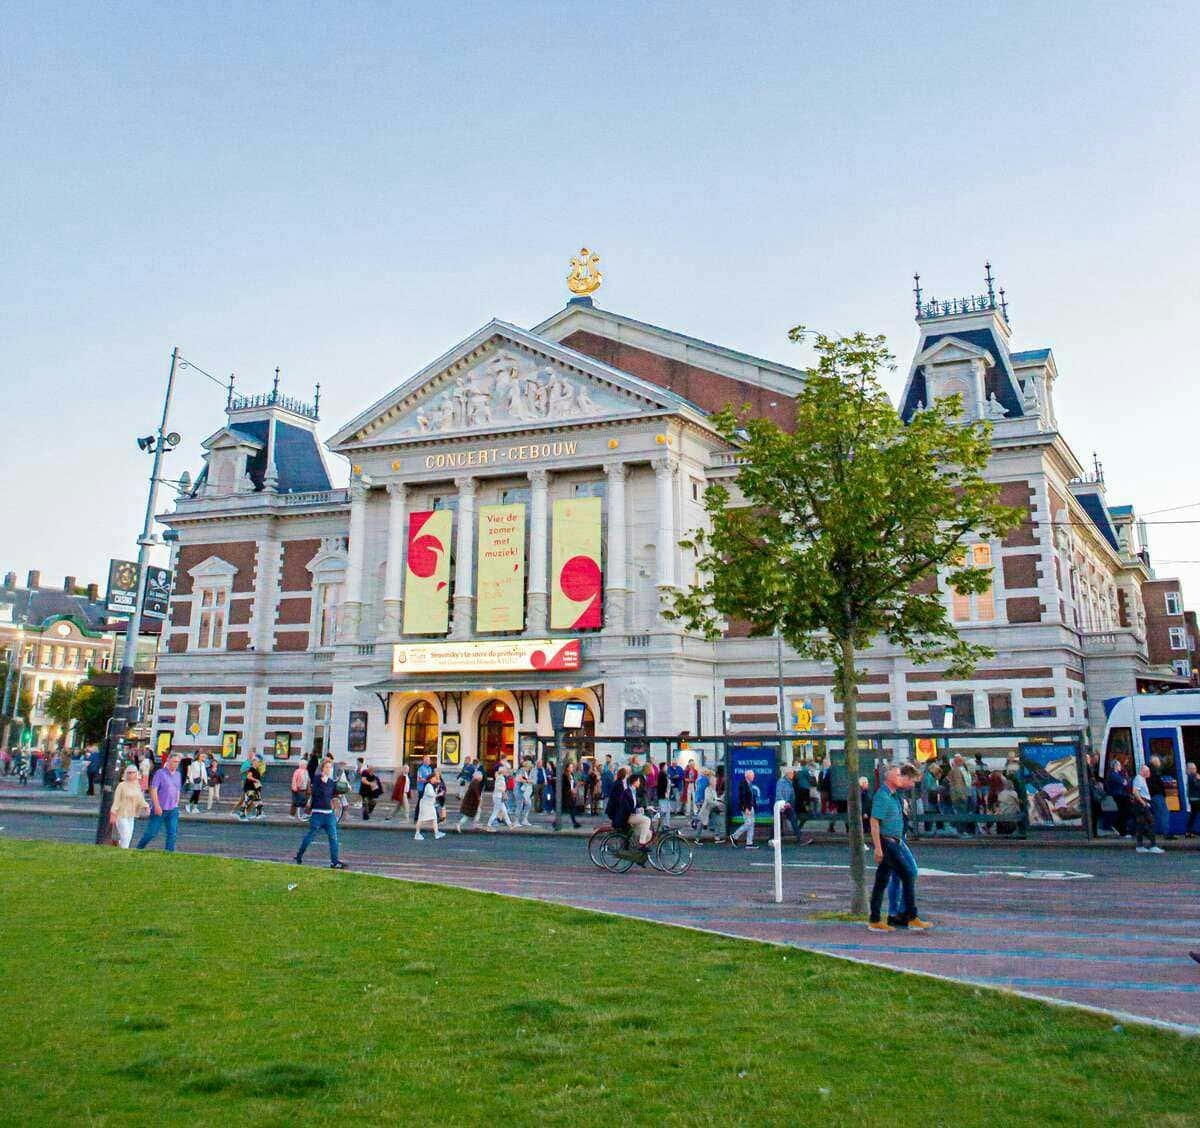 Amsterdam – Museumplein met het Concertgebouw zonder lijst